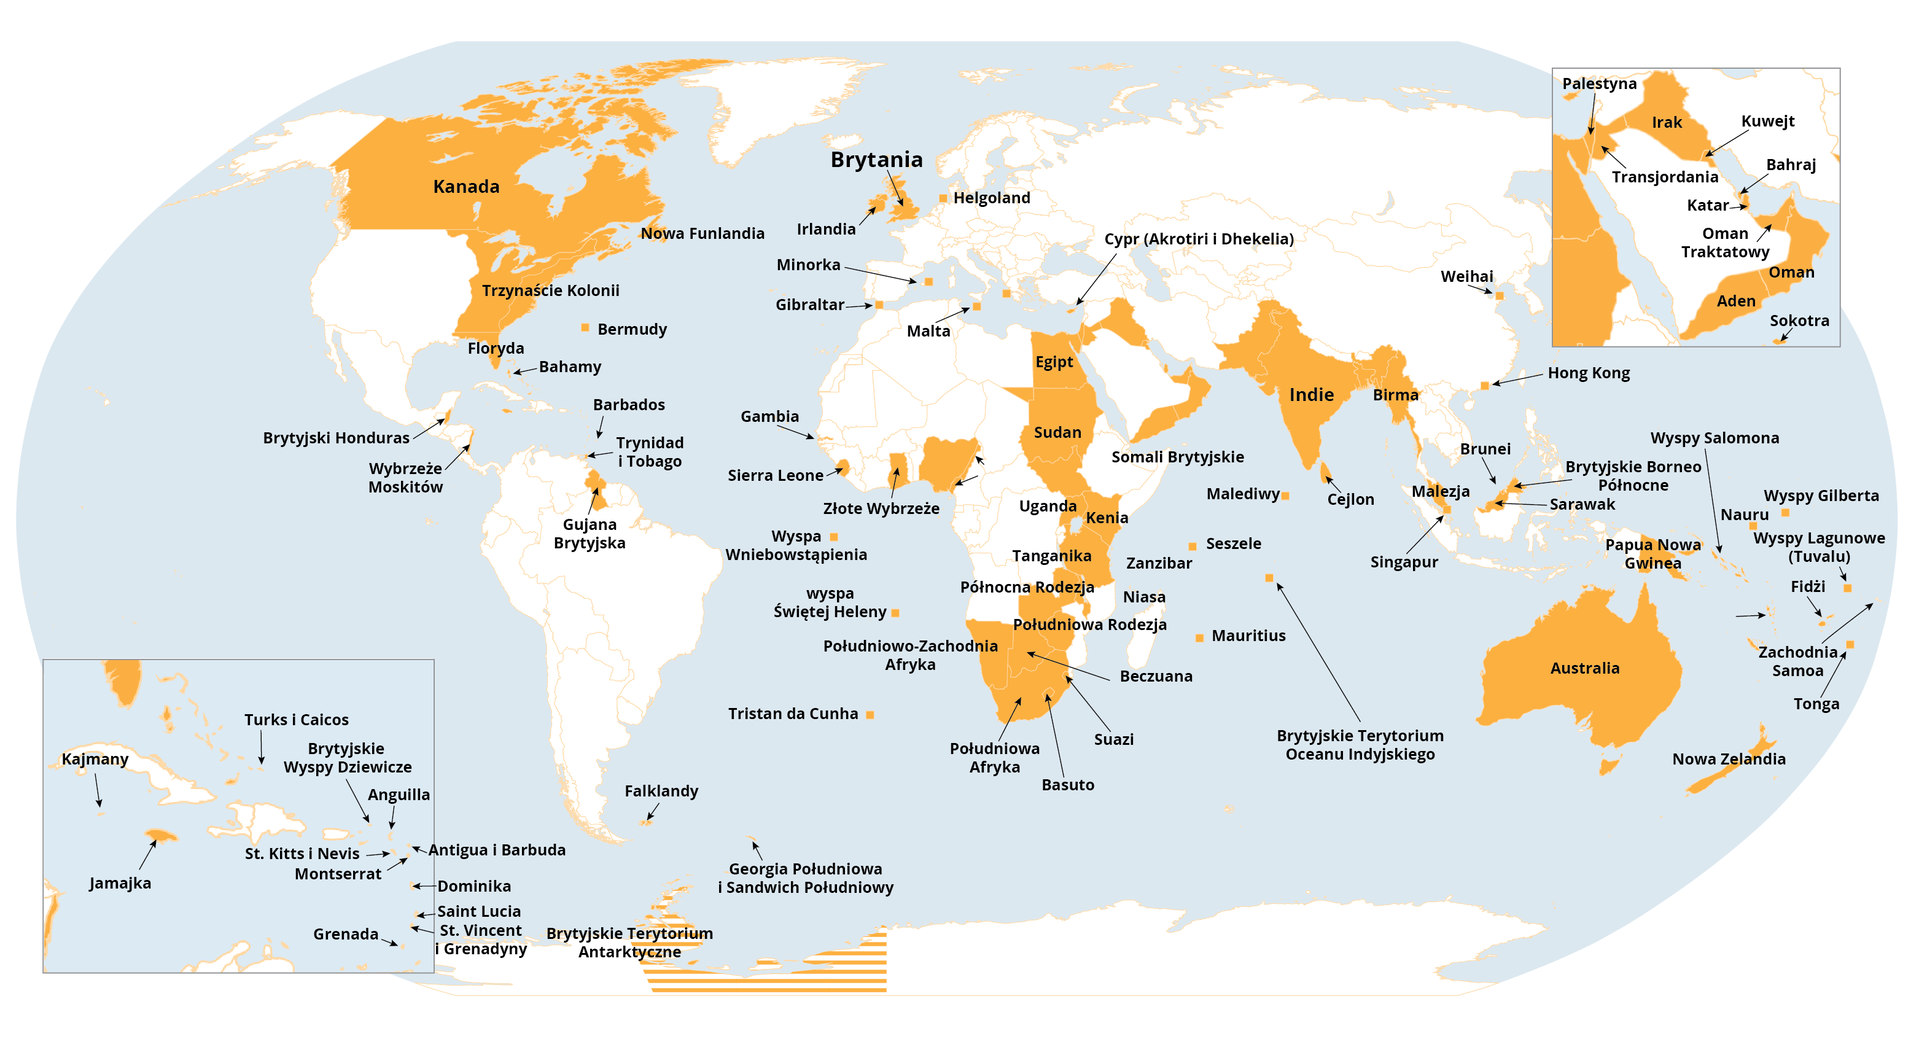 Mapa świata prezentująca brytyjskie  kolonie, protektoraty i dominia. W Ameryce Północnej: Kanadę , 13 kolonii na wschodnim wybrzeżu, Florydę, Bermudy, Brytyjski Honduras, Wybrzeże Moskitów. W Ameryce Południowej: Trinidad i Tobago, Gujanę Brytyjską. W Afryce: Egipt, Sudan, Sierra Leone, Złote Wybrzeże, Ugandę, Kenię, Tanganikę, Północną Rodezję, Południową Rodezję, Południowo-Zachodnią Afrykę, Beczuanę, Suezi, Południową Afrykę, Basuto. W Azji: Indie, Birmę, Hong Kong. Australię, Papuę i Nową Gwineę, Nową Zelandię.